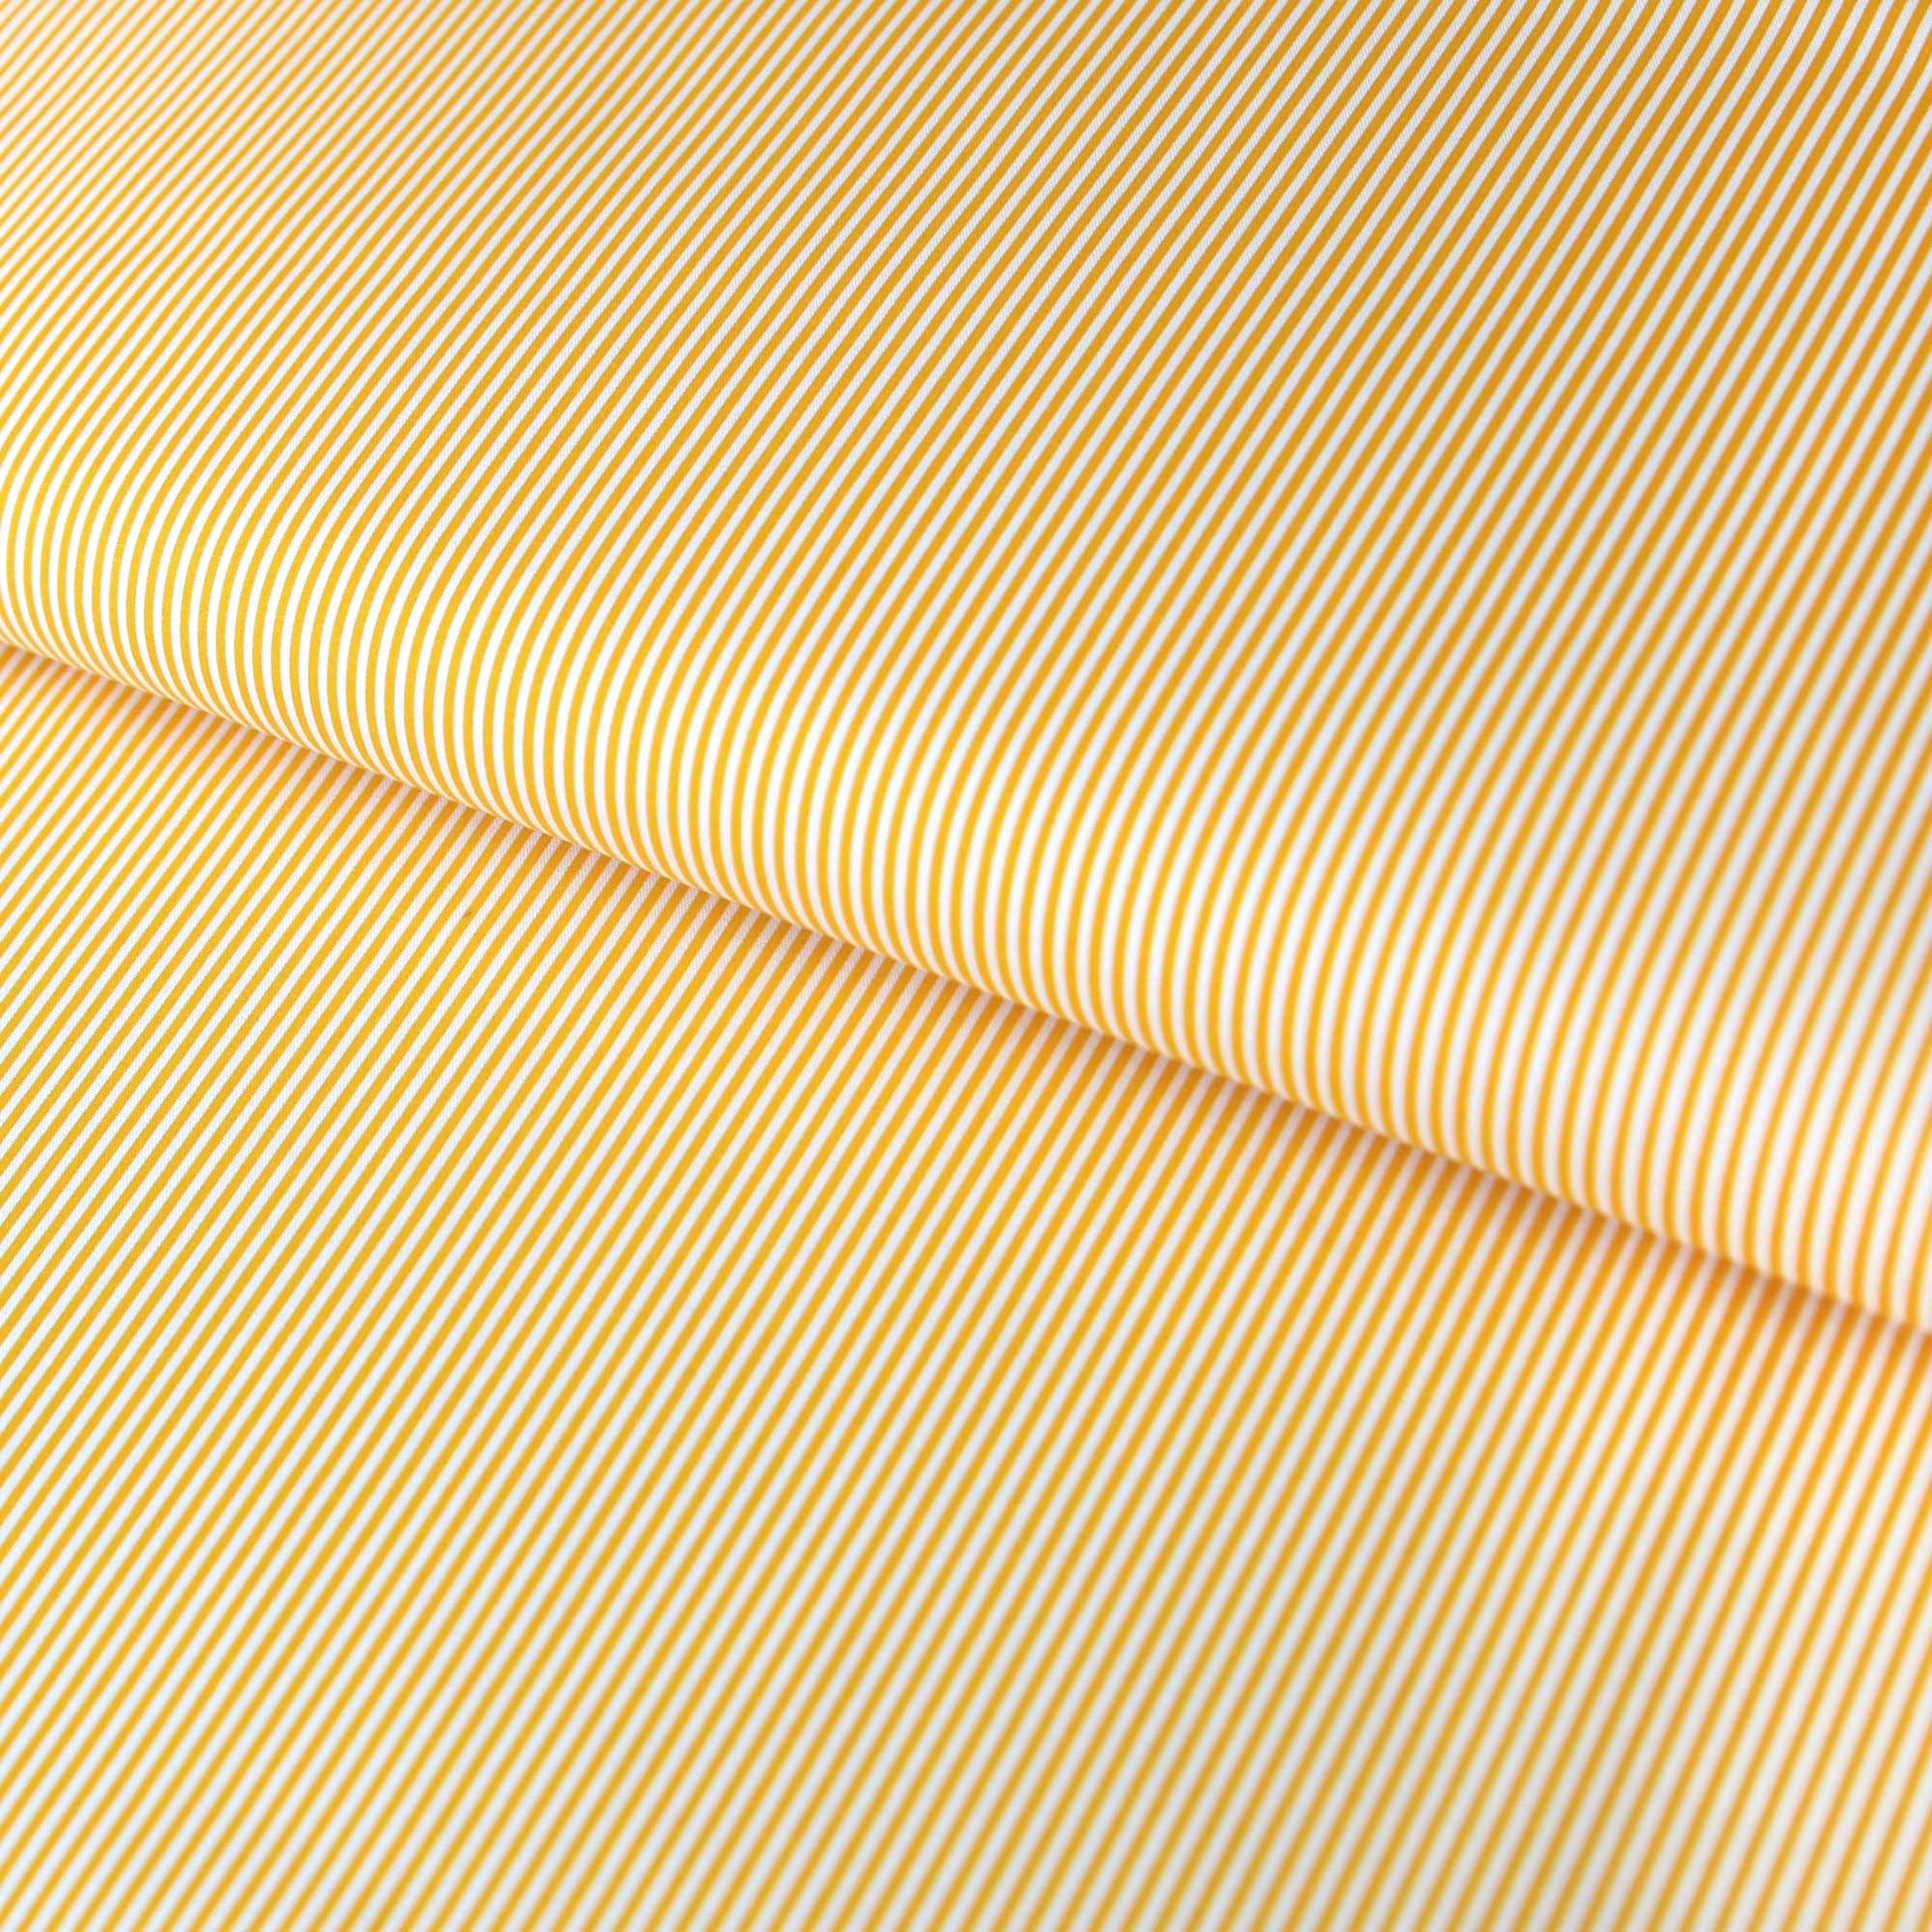 Baumwollstoff mit Linien / Popeline " 0,2 cm schmale weiße Streifen auf gelb" - Patchwork 100% Baumwolle dottergelb - Stoffe Kudellino